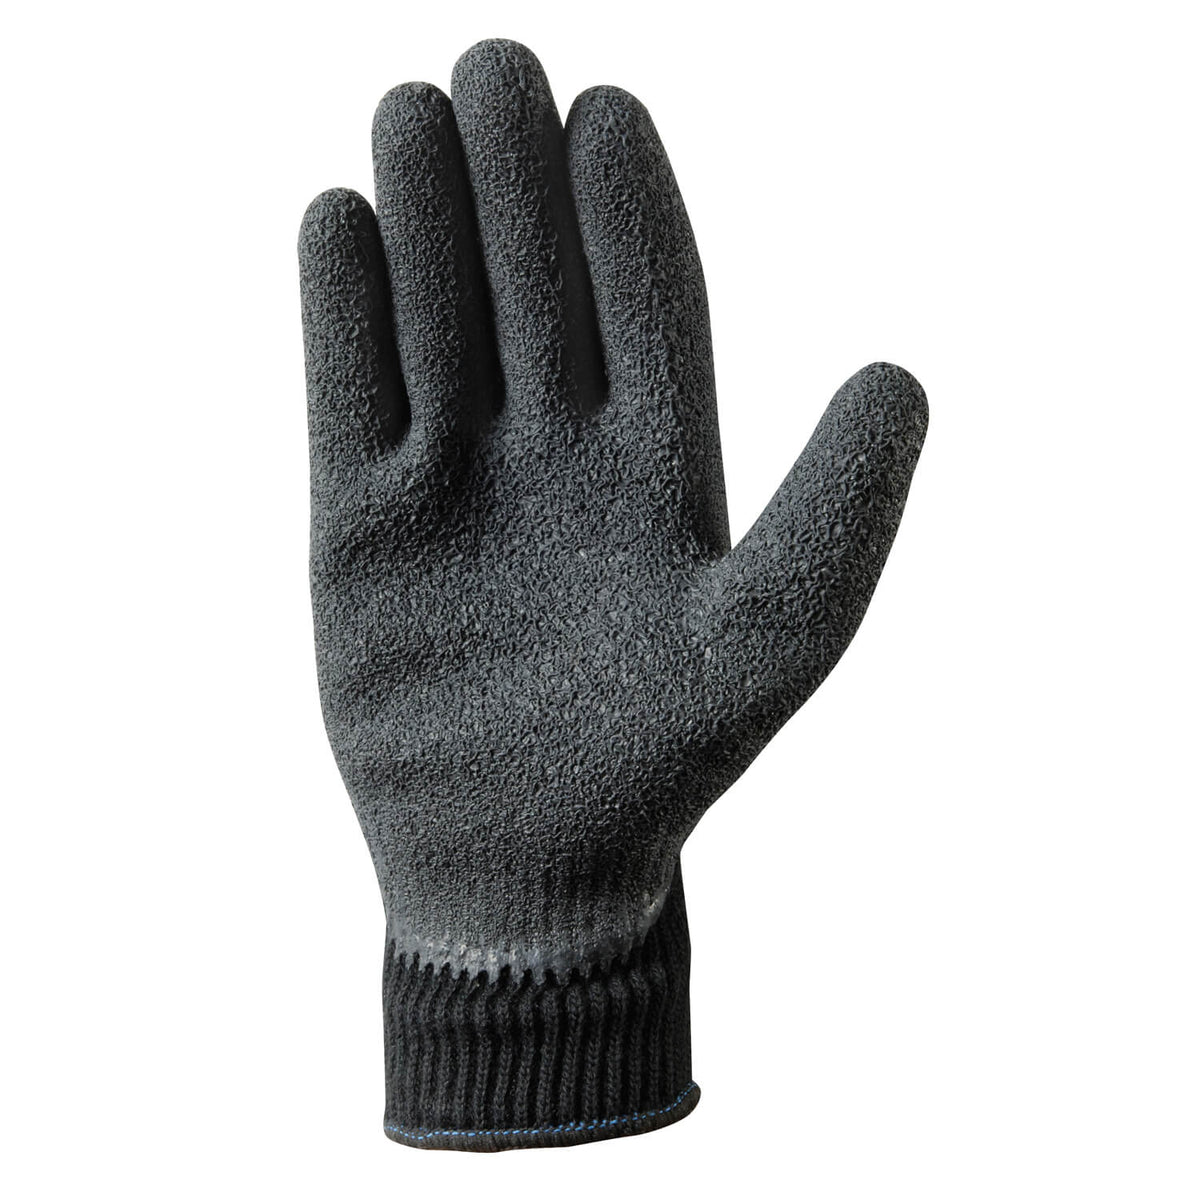 Wells Lamont 2-Pair Pack Cold Weather Latex Grip Versatile Winter Work Gloves - Work World - Workwear, Work Boots, Safety Gear